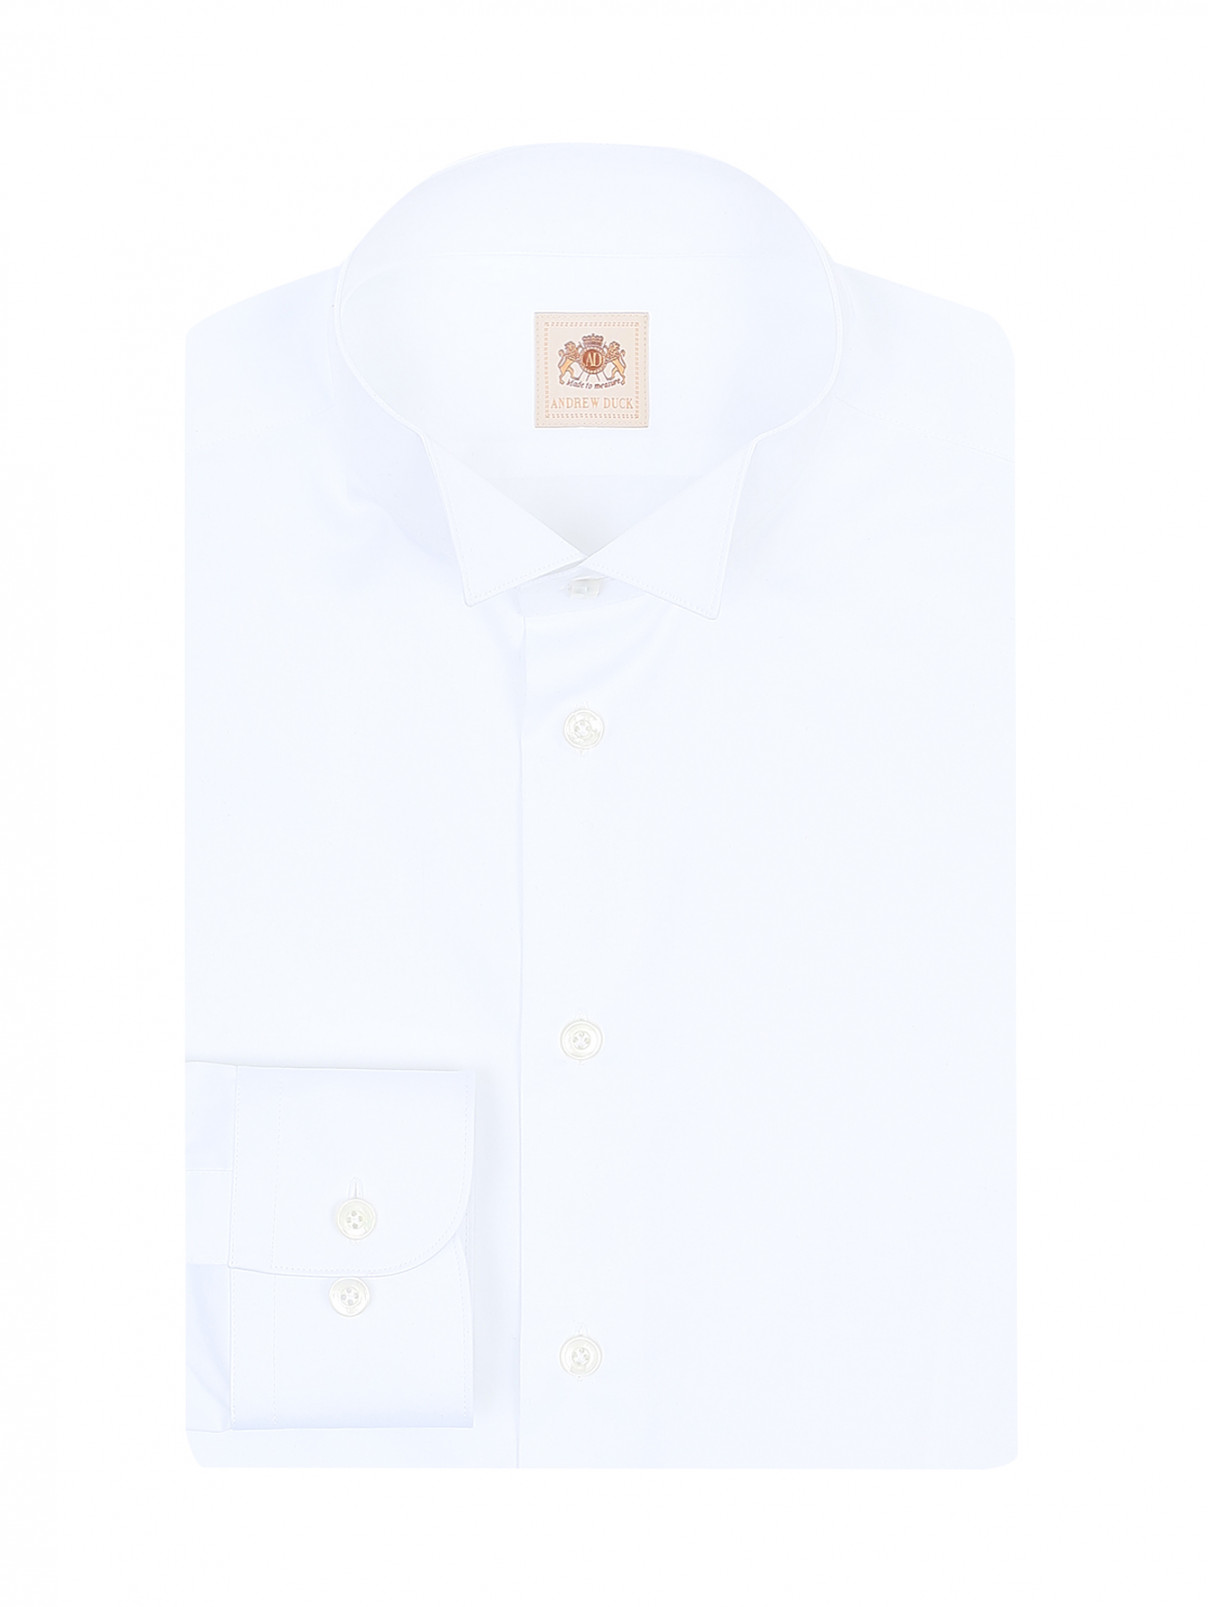 Рубашка из хлопка Andrew Duck  –  Общий вид  – Цвет:  Белый